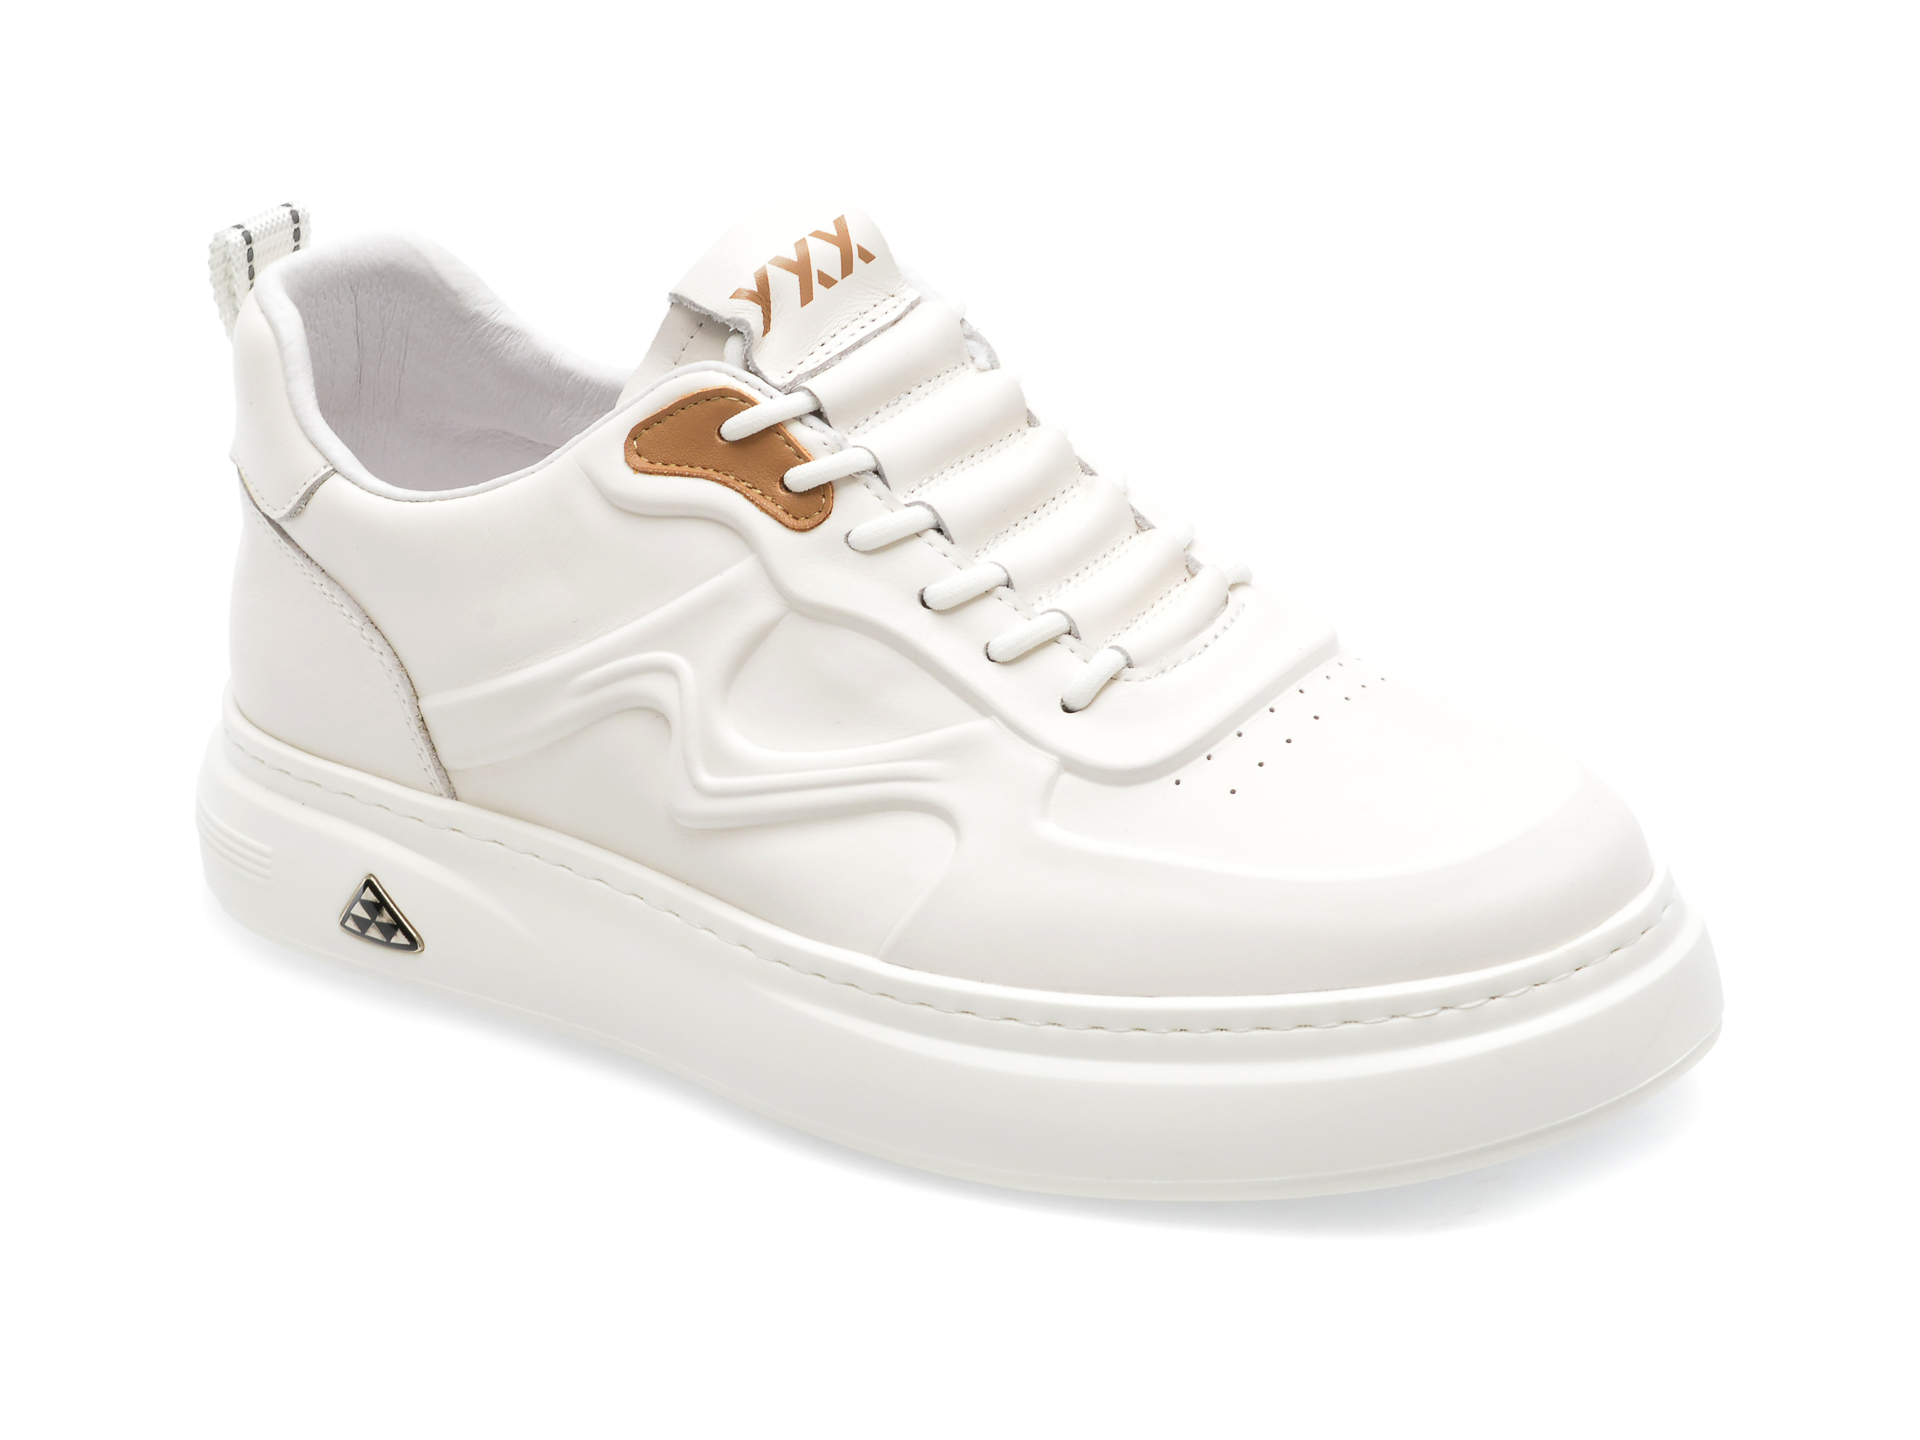 Pantofi GRYXX albi, 3151, din piele naturala